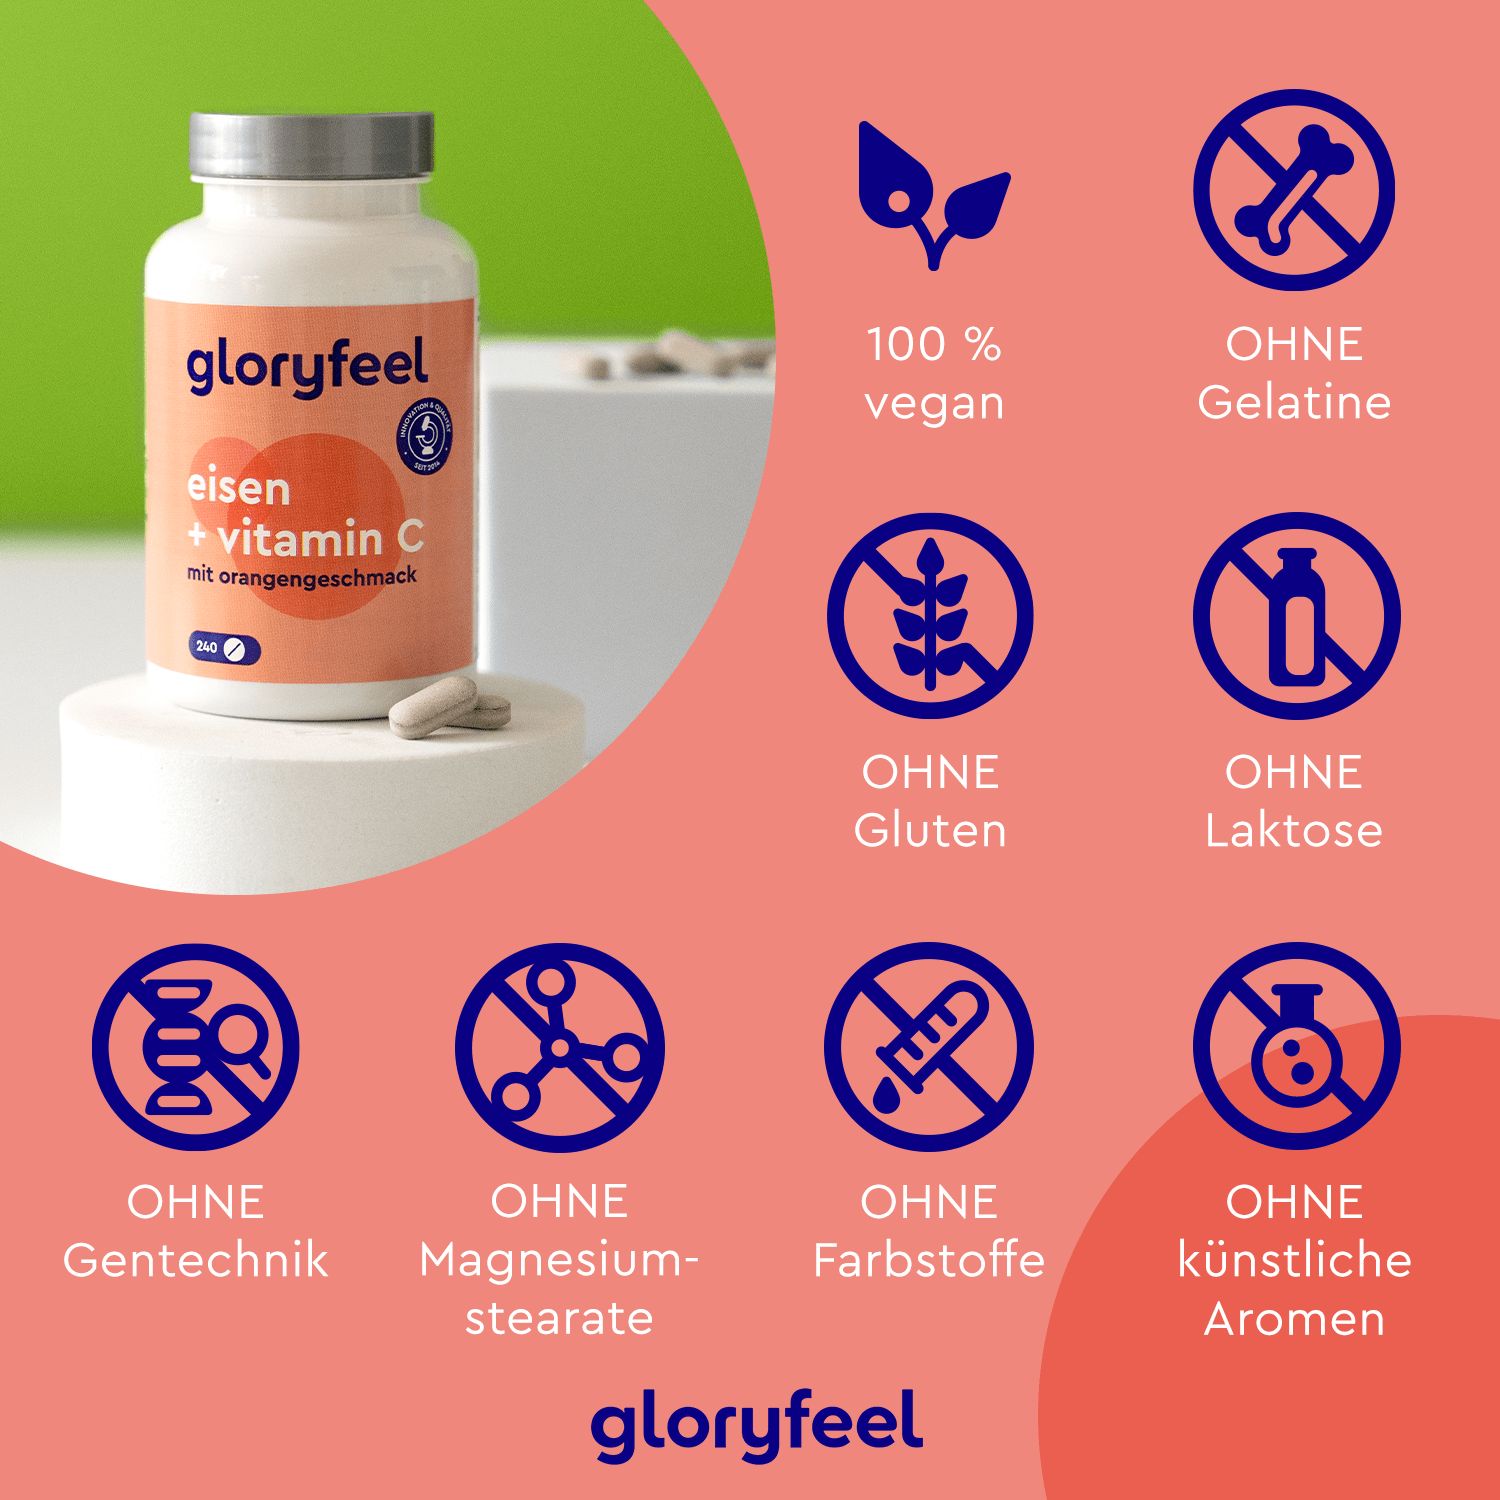 gloryfeel® Eisen + Vitamin C Kapseln